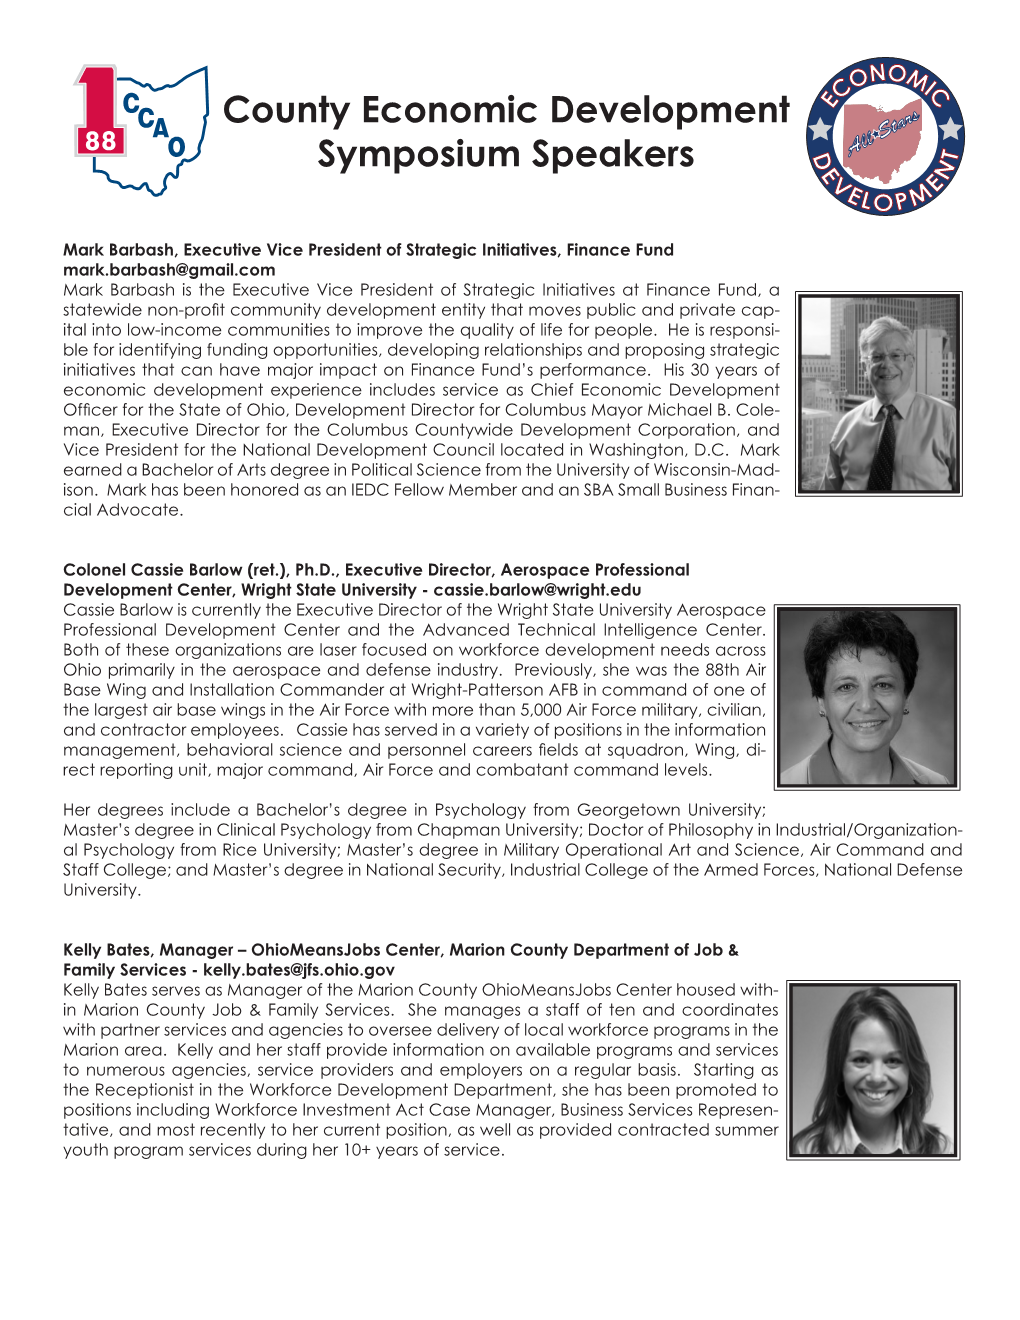 County Economic Development Symposium Speakers